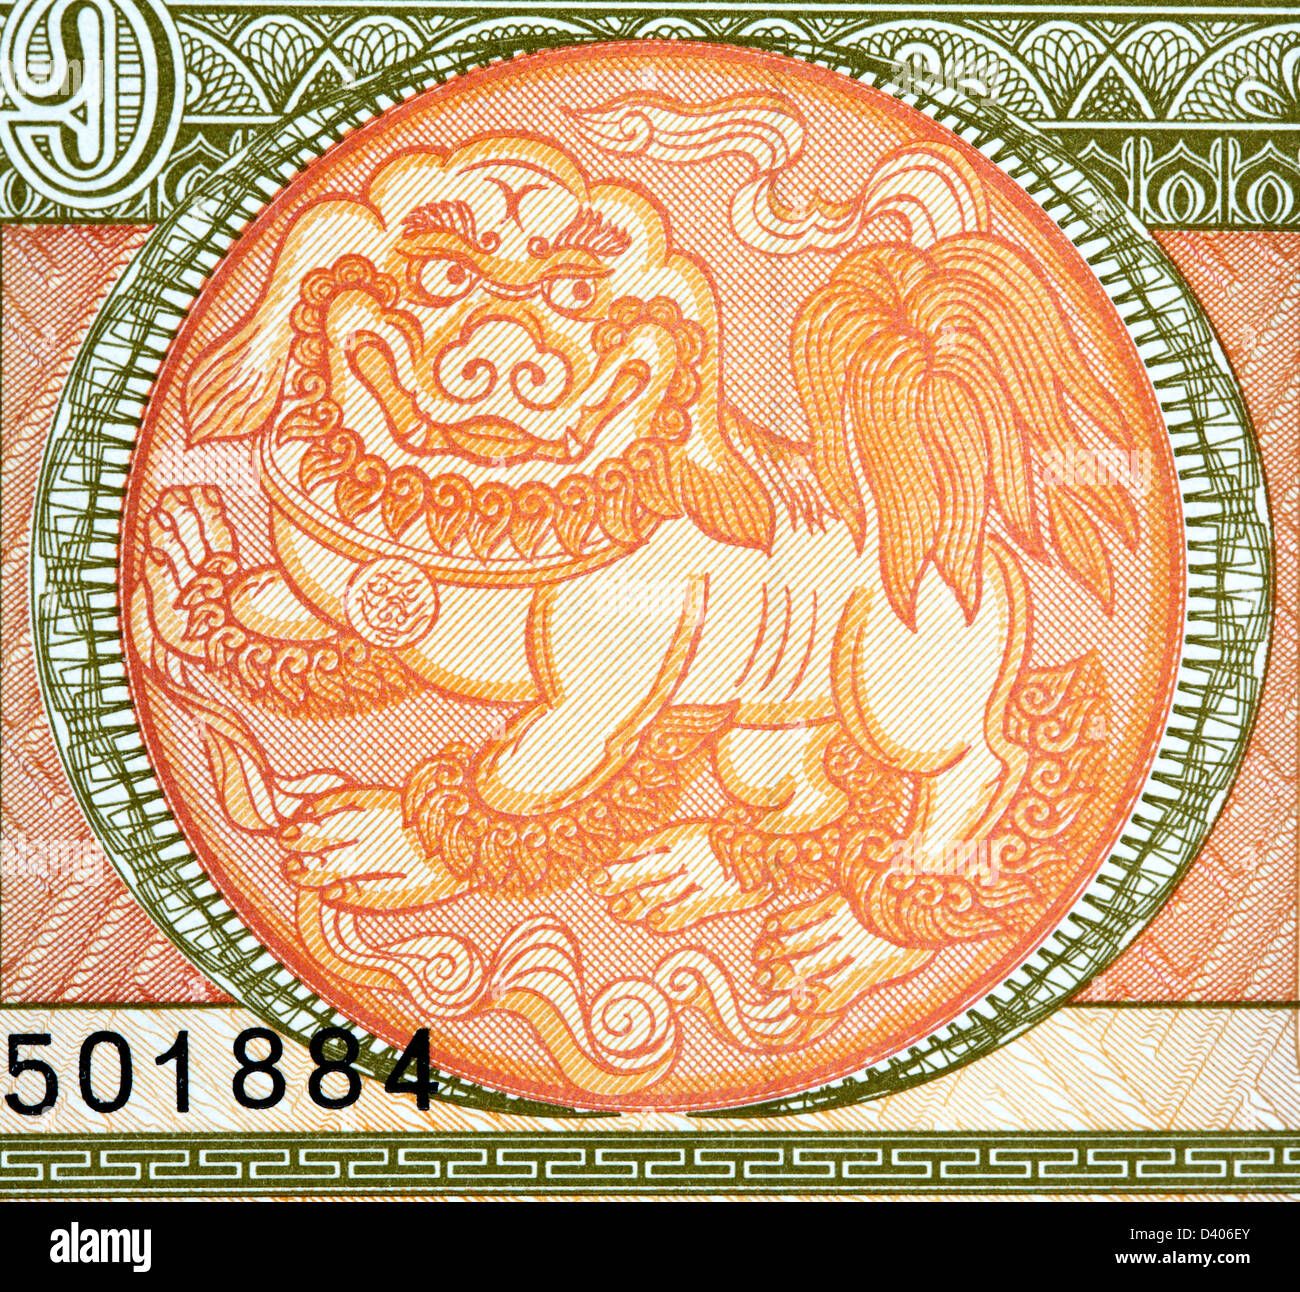 Bestia mitologica Chinze da 1 Tugrik banconota, Mongolia, 2008 Foto Stock